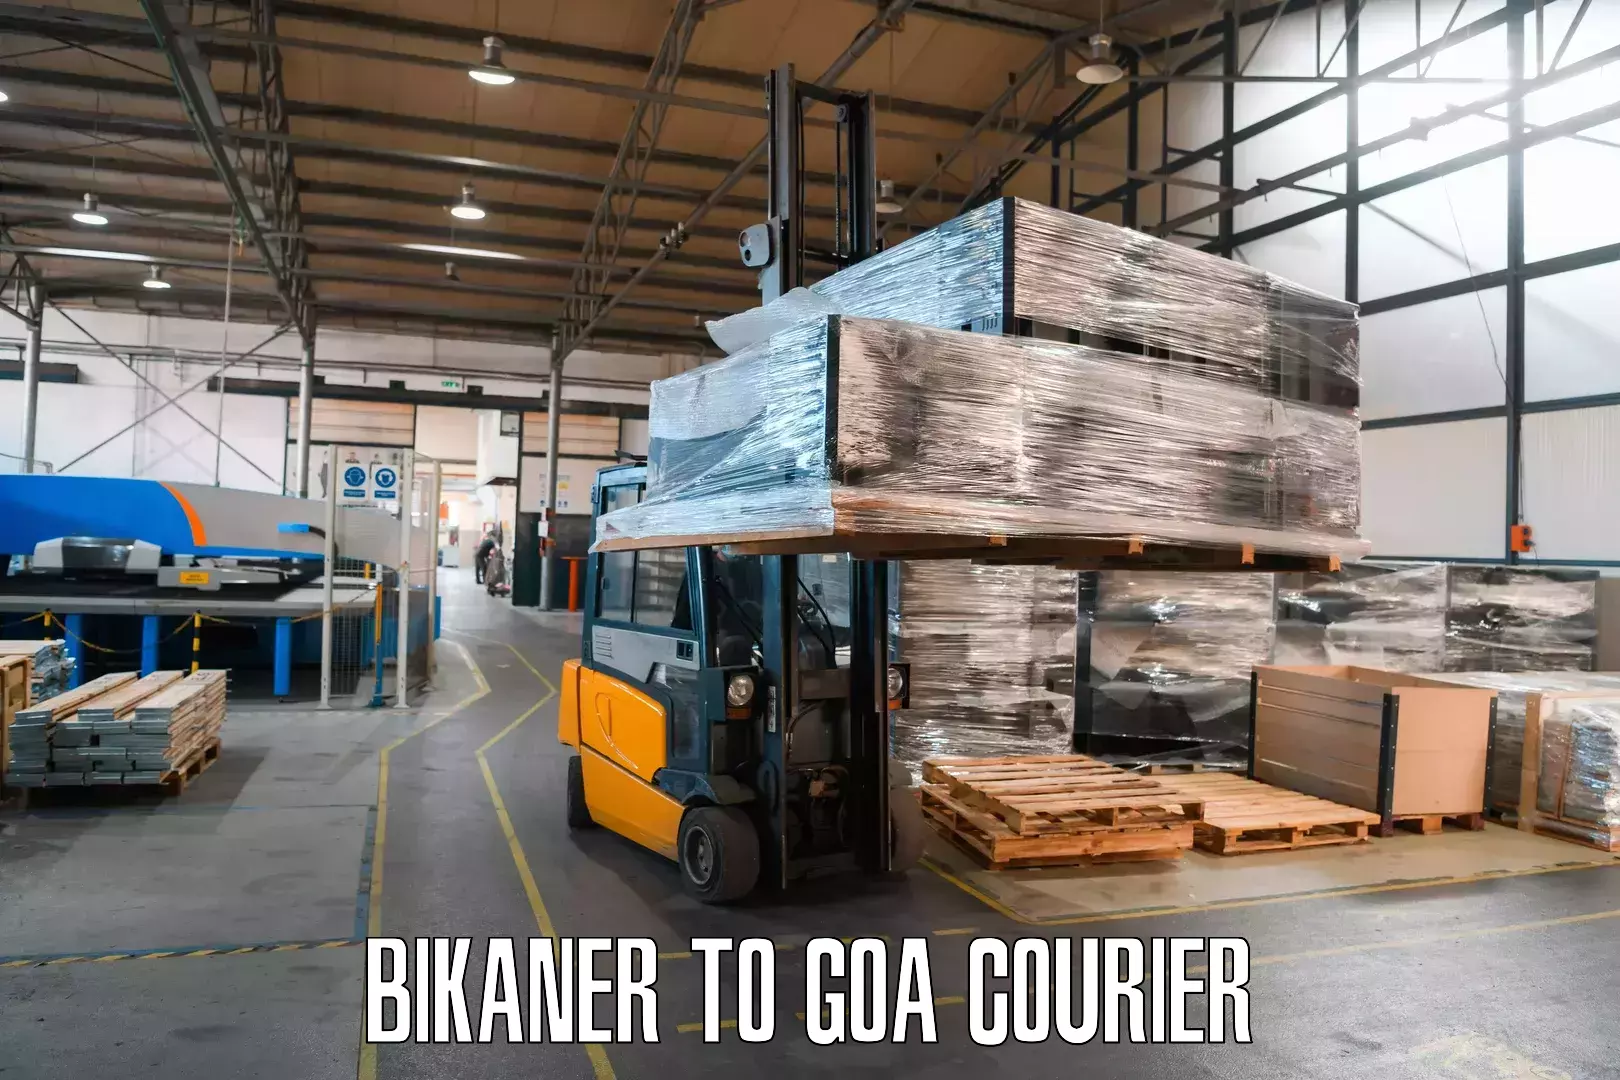 Cost-effective courier options Bikaner to IIT Goa